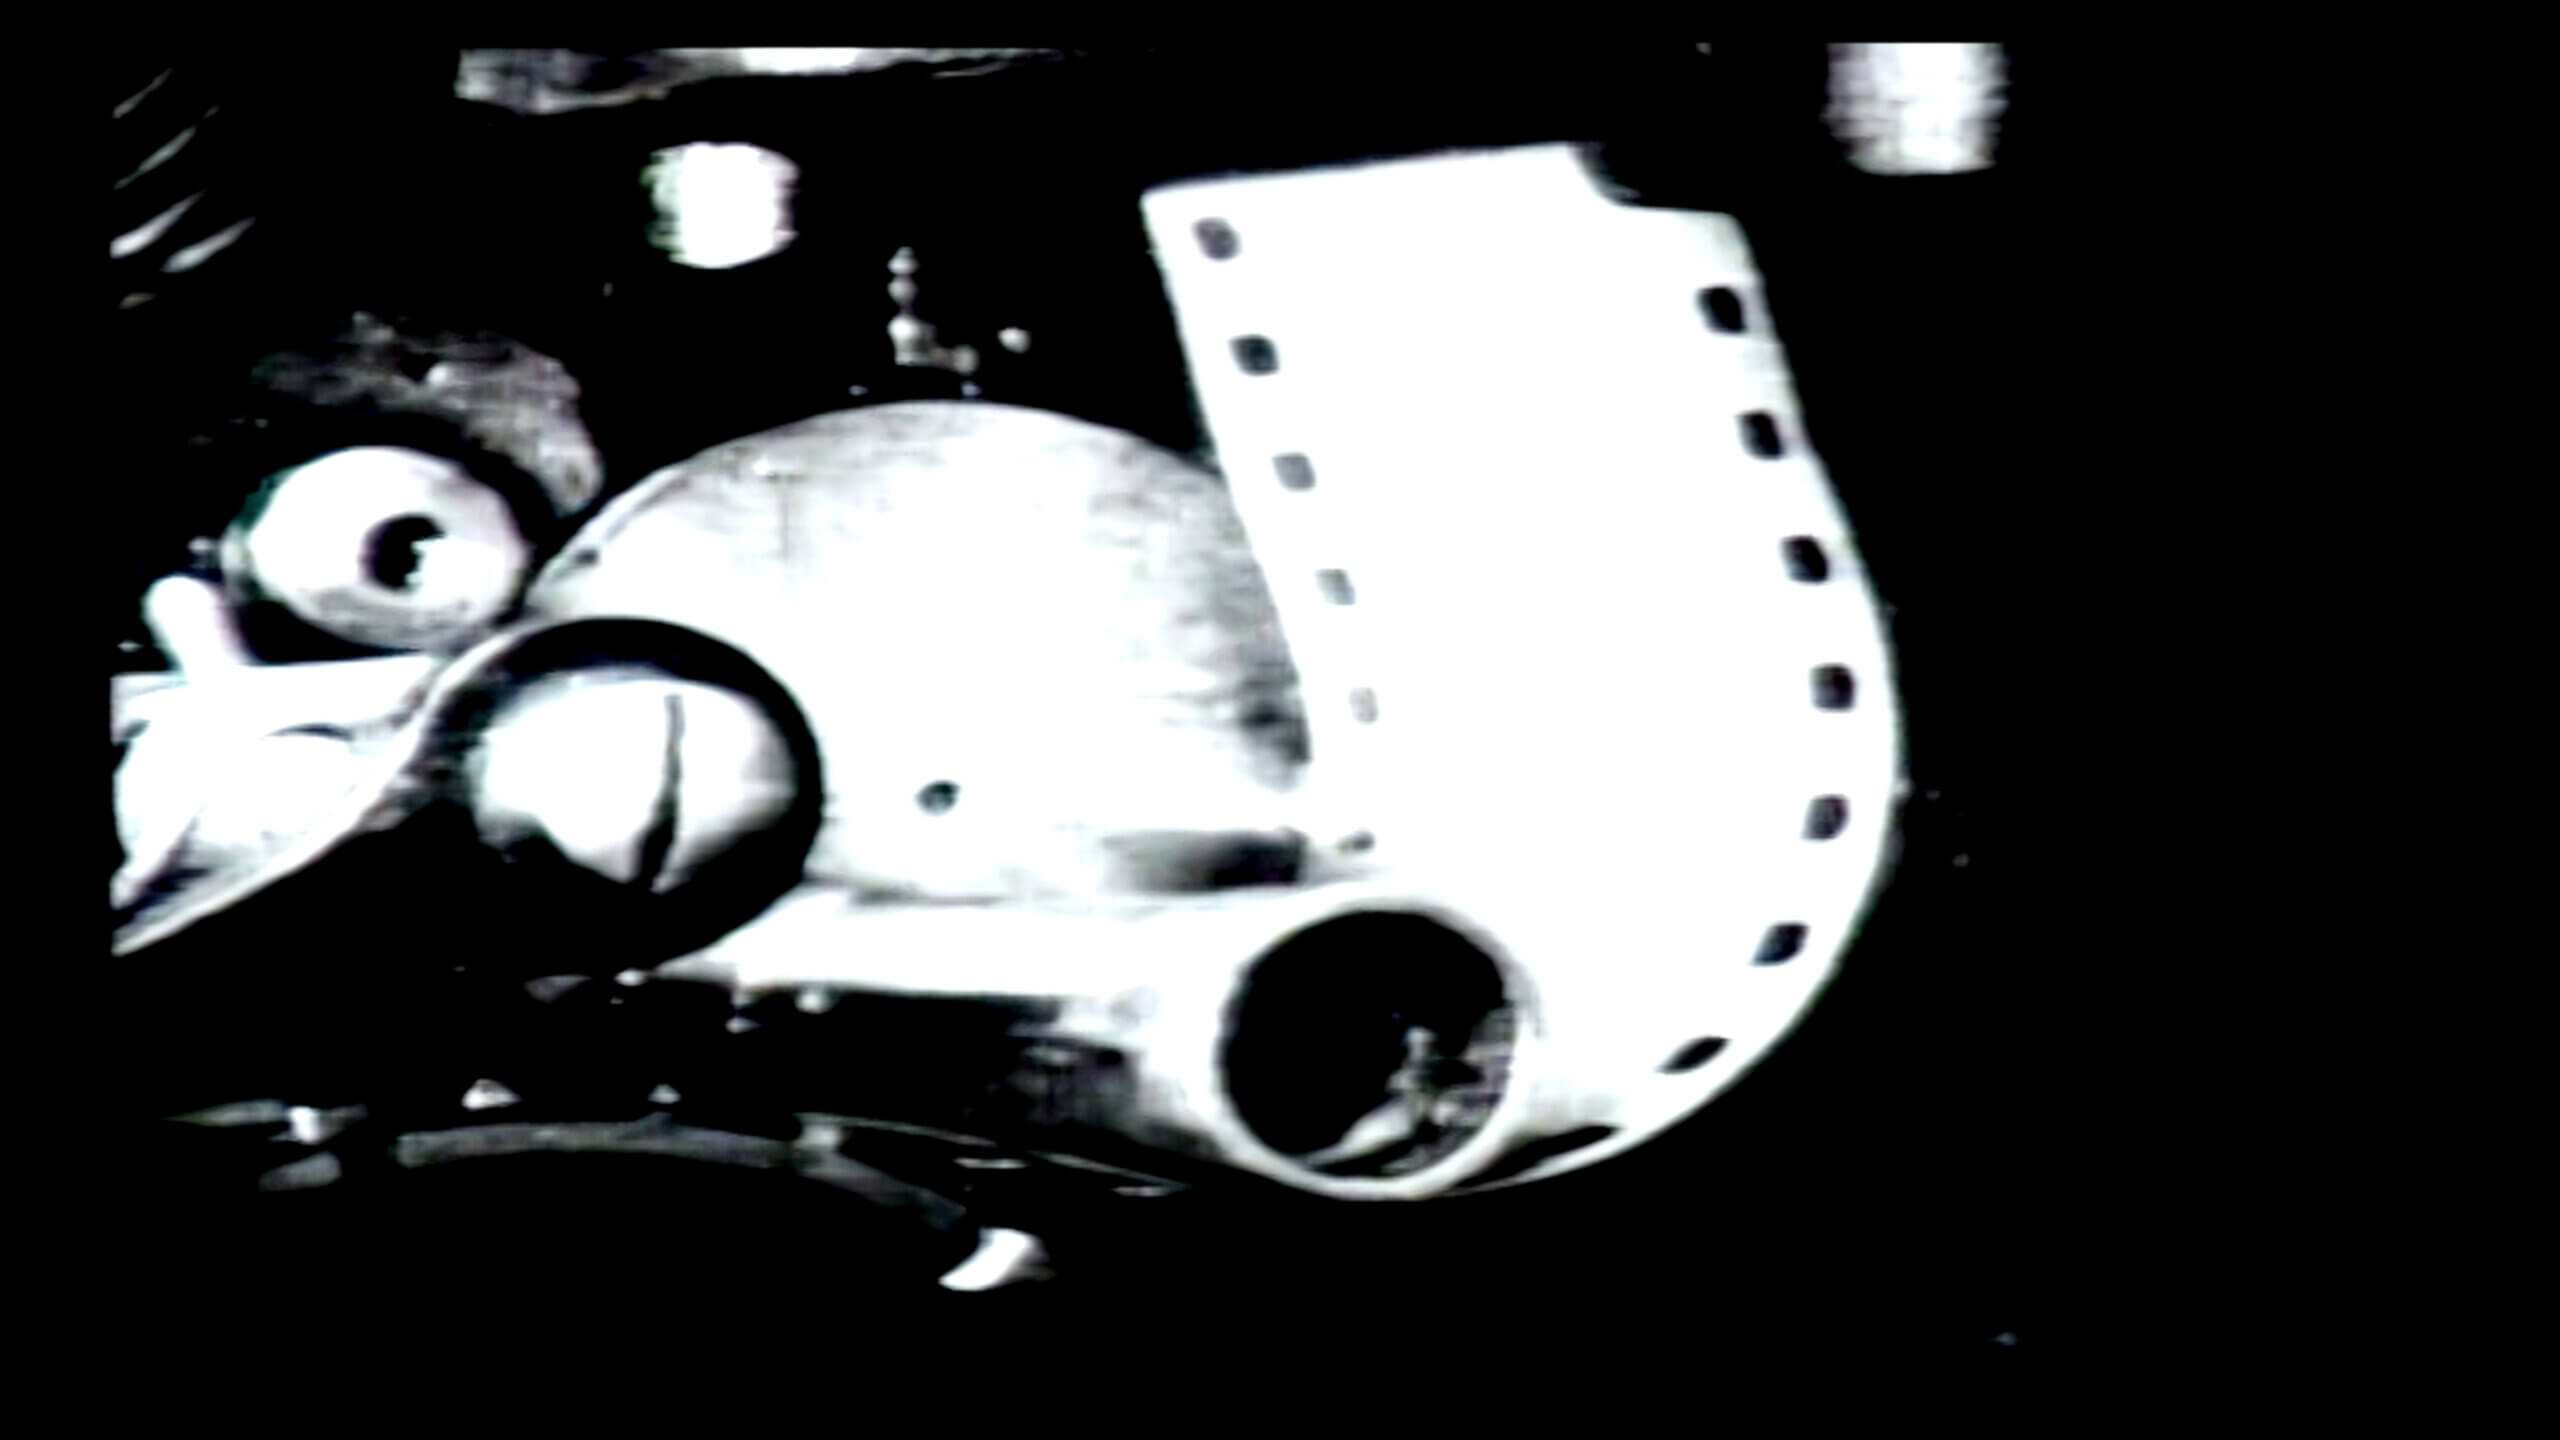 Image en noir et blanc d'un film pellicule entraîné dans le mécanisme d'un projecteur, tirée du film LE LIVRE D'IMAGE de Jean-Luc Godard